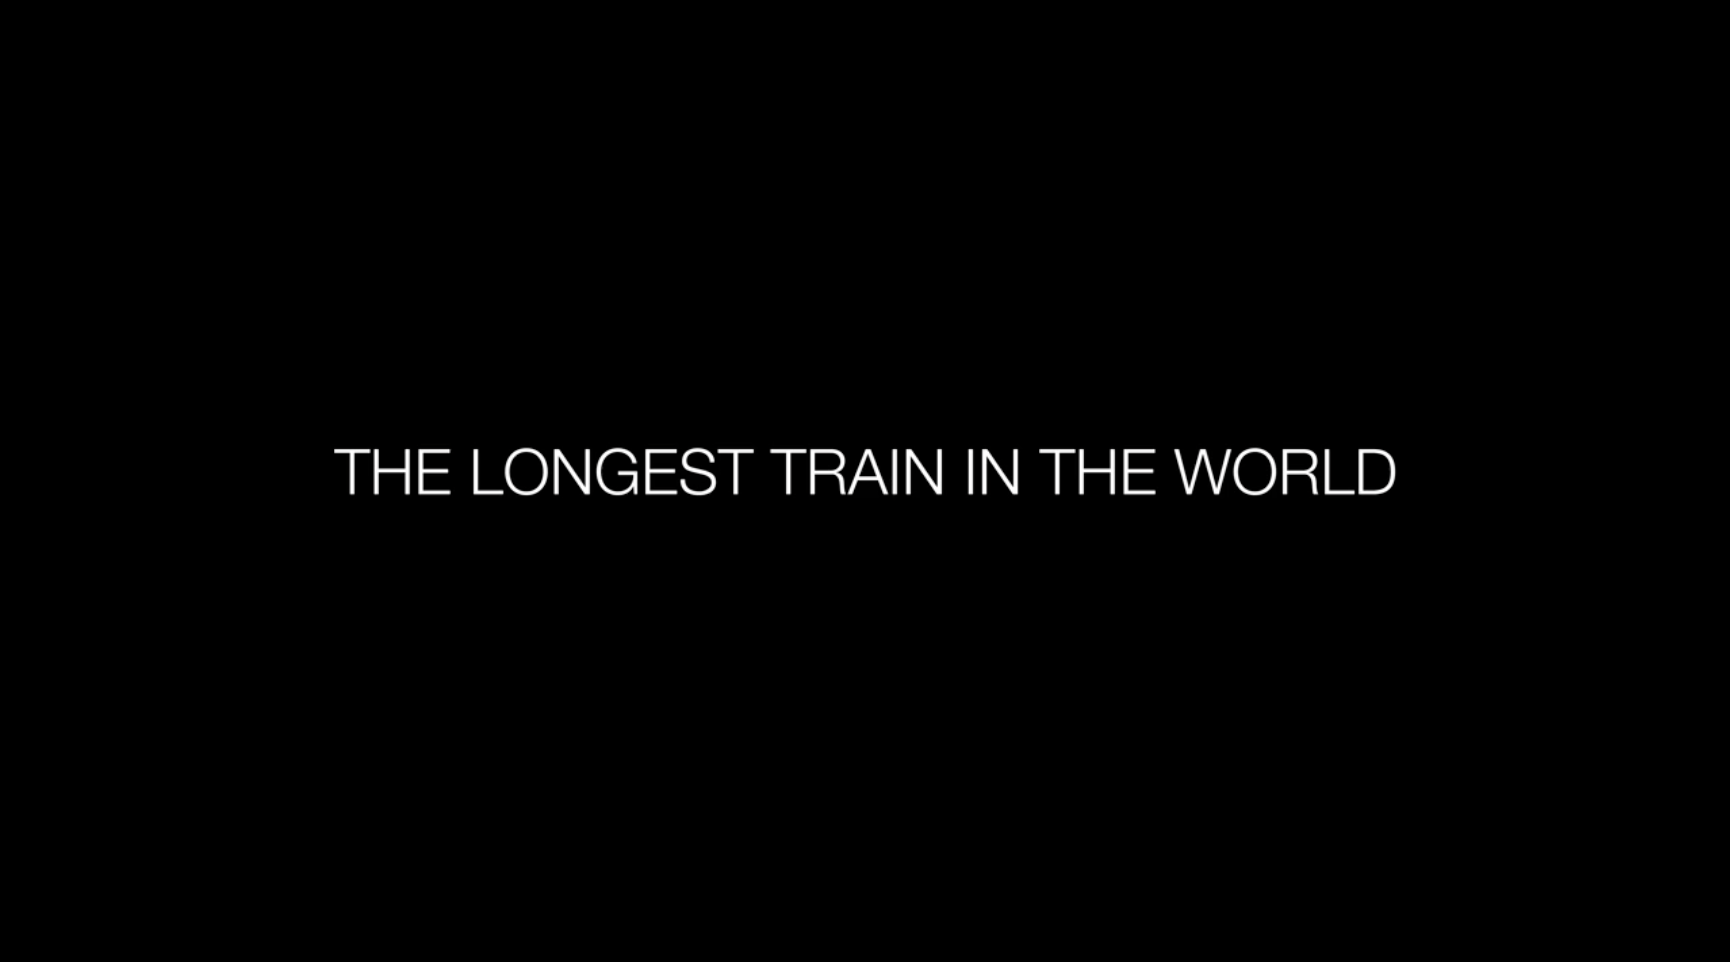 Longest train in the world